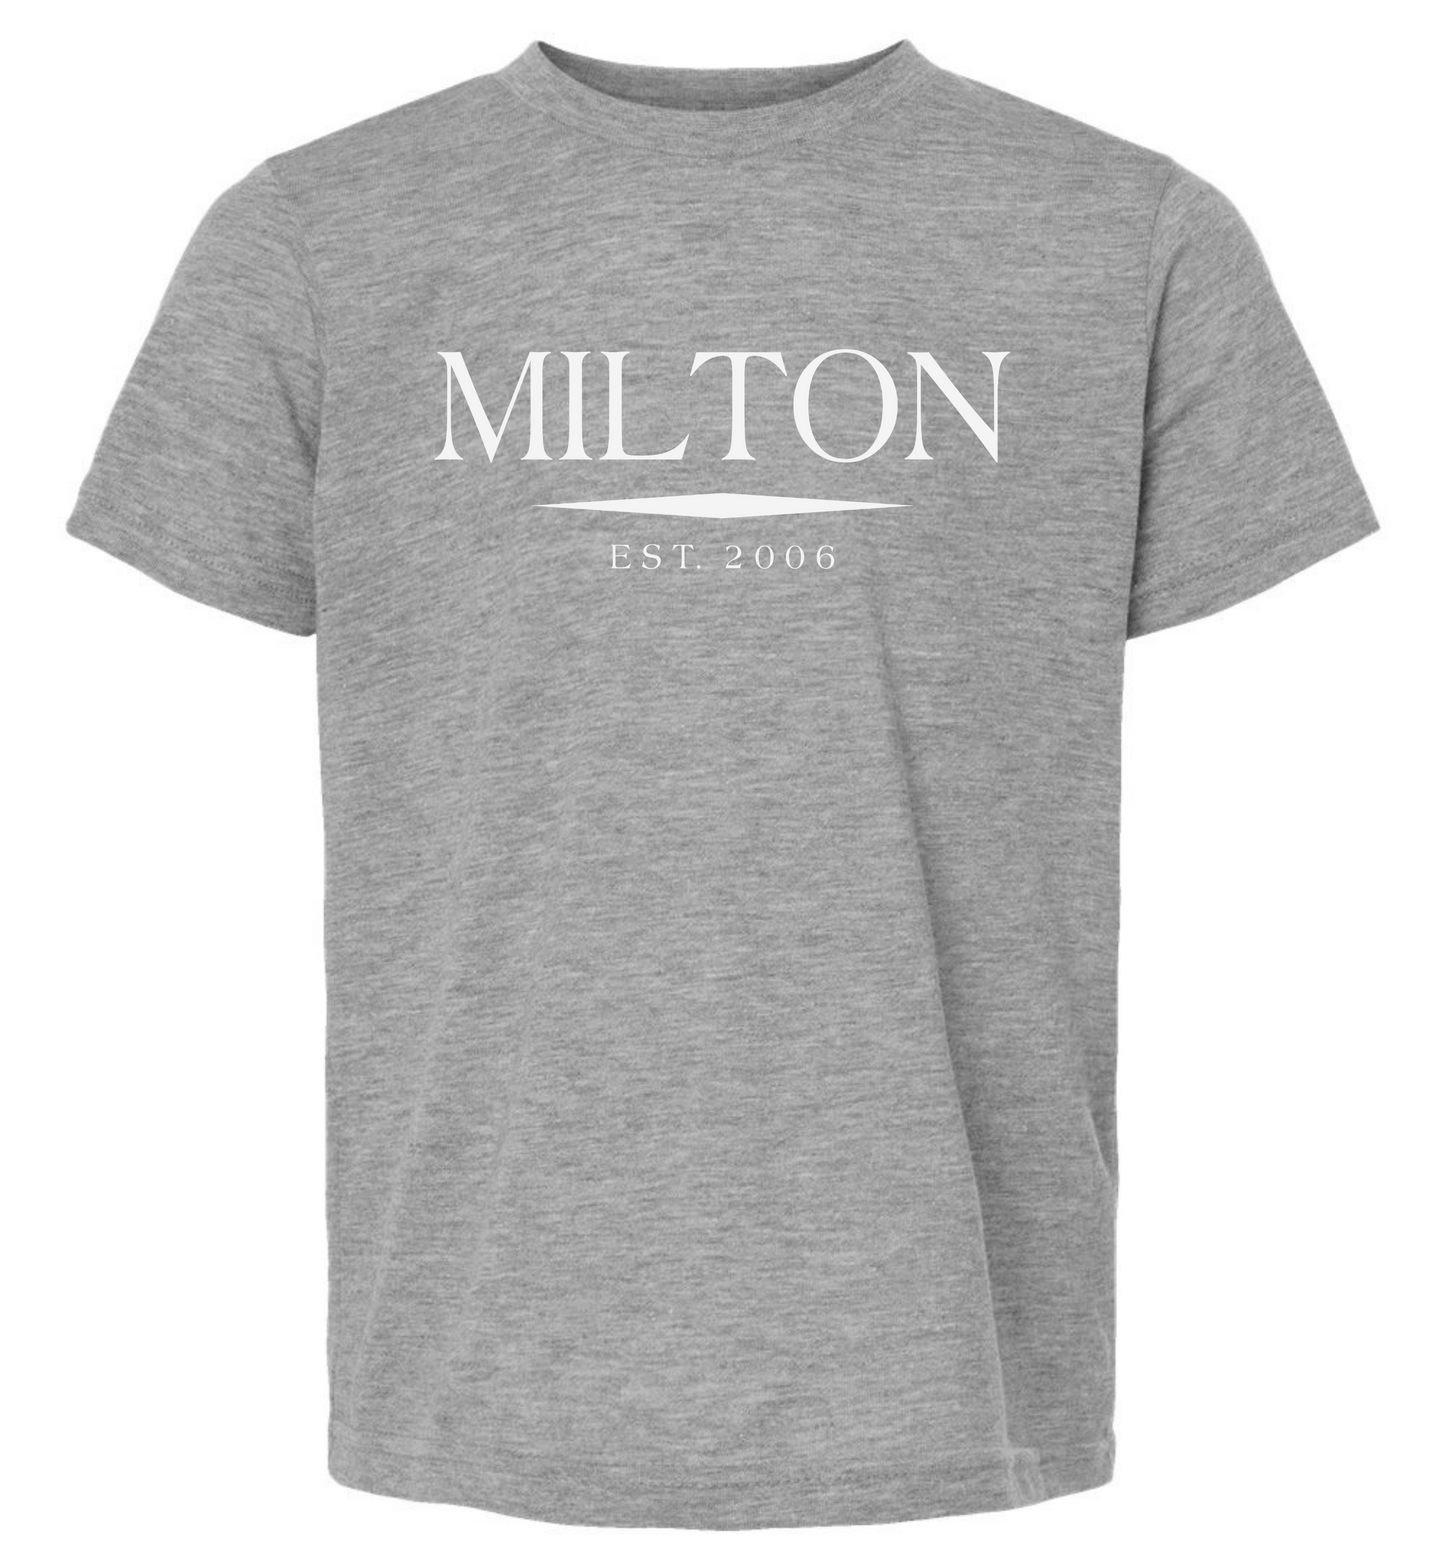 Milton T-Shirt